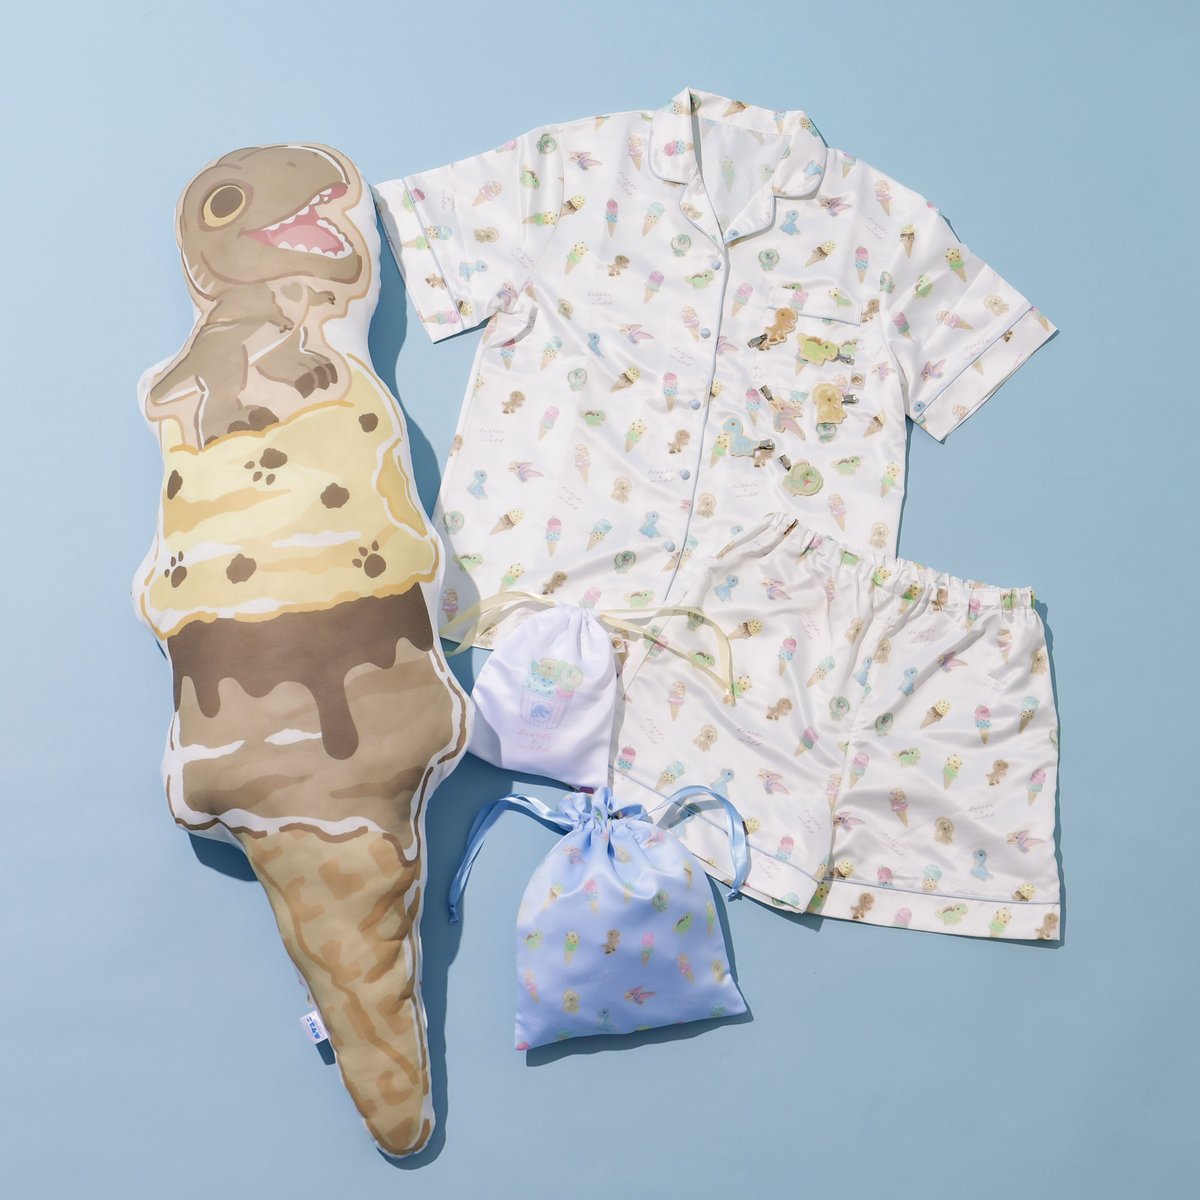 5月9日は「アイスクリームの日🍧」

ポケユニストアではアイスがモチーフの
ジュラシック・パークグッズを販売中✨
触るとひんやり冷たい抱き枕は
これからの季節にぴったり！💙
公式通販サイトでも販売中！

▽お買い物はここから
palcloset.jp/display/displa…